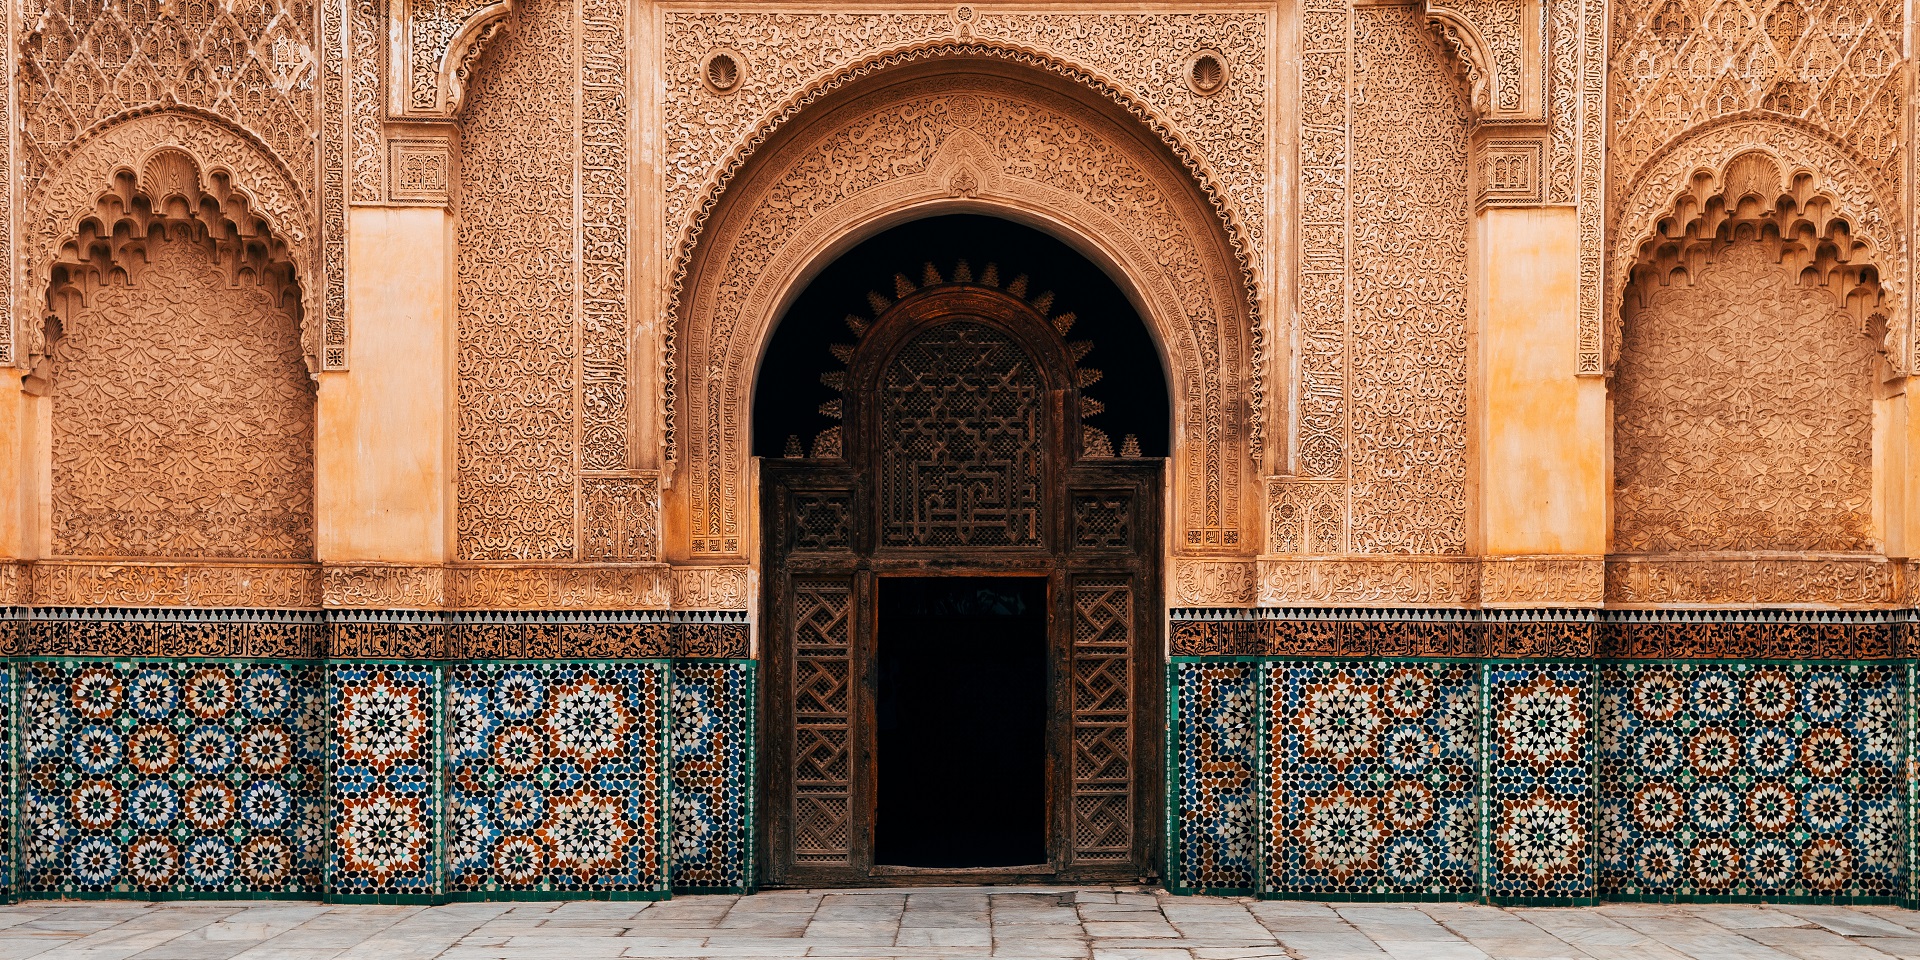 Courtyard in Marrakech, Morocco